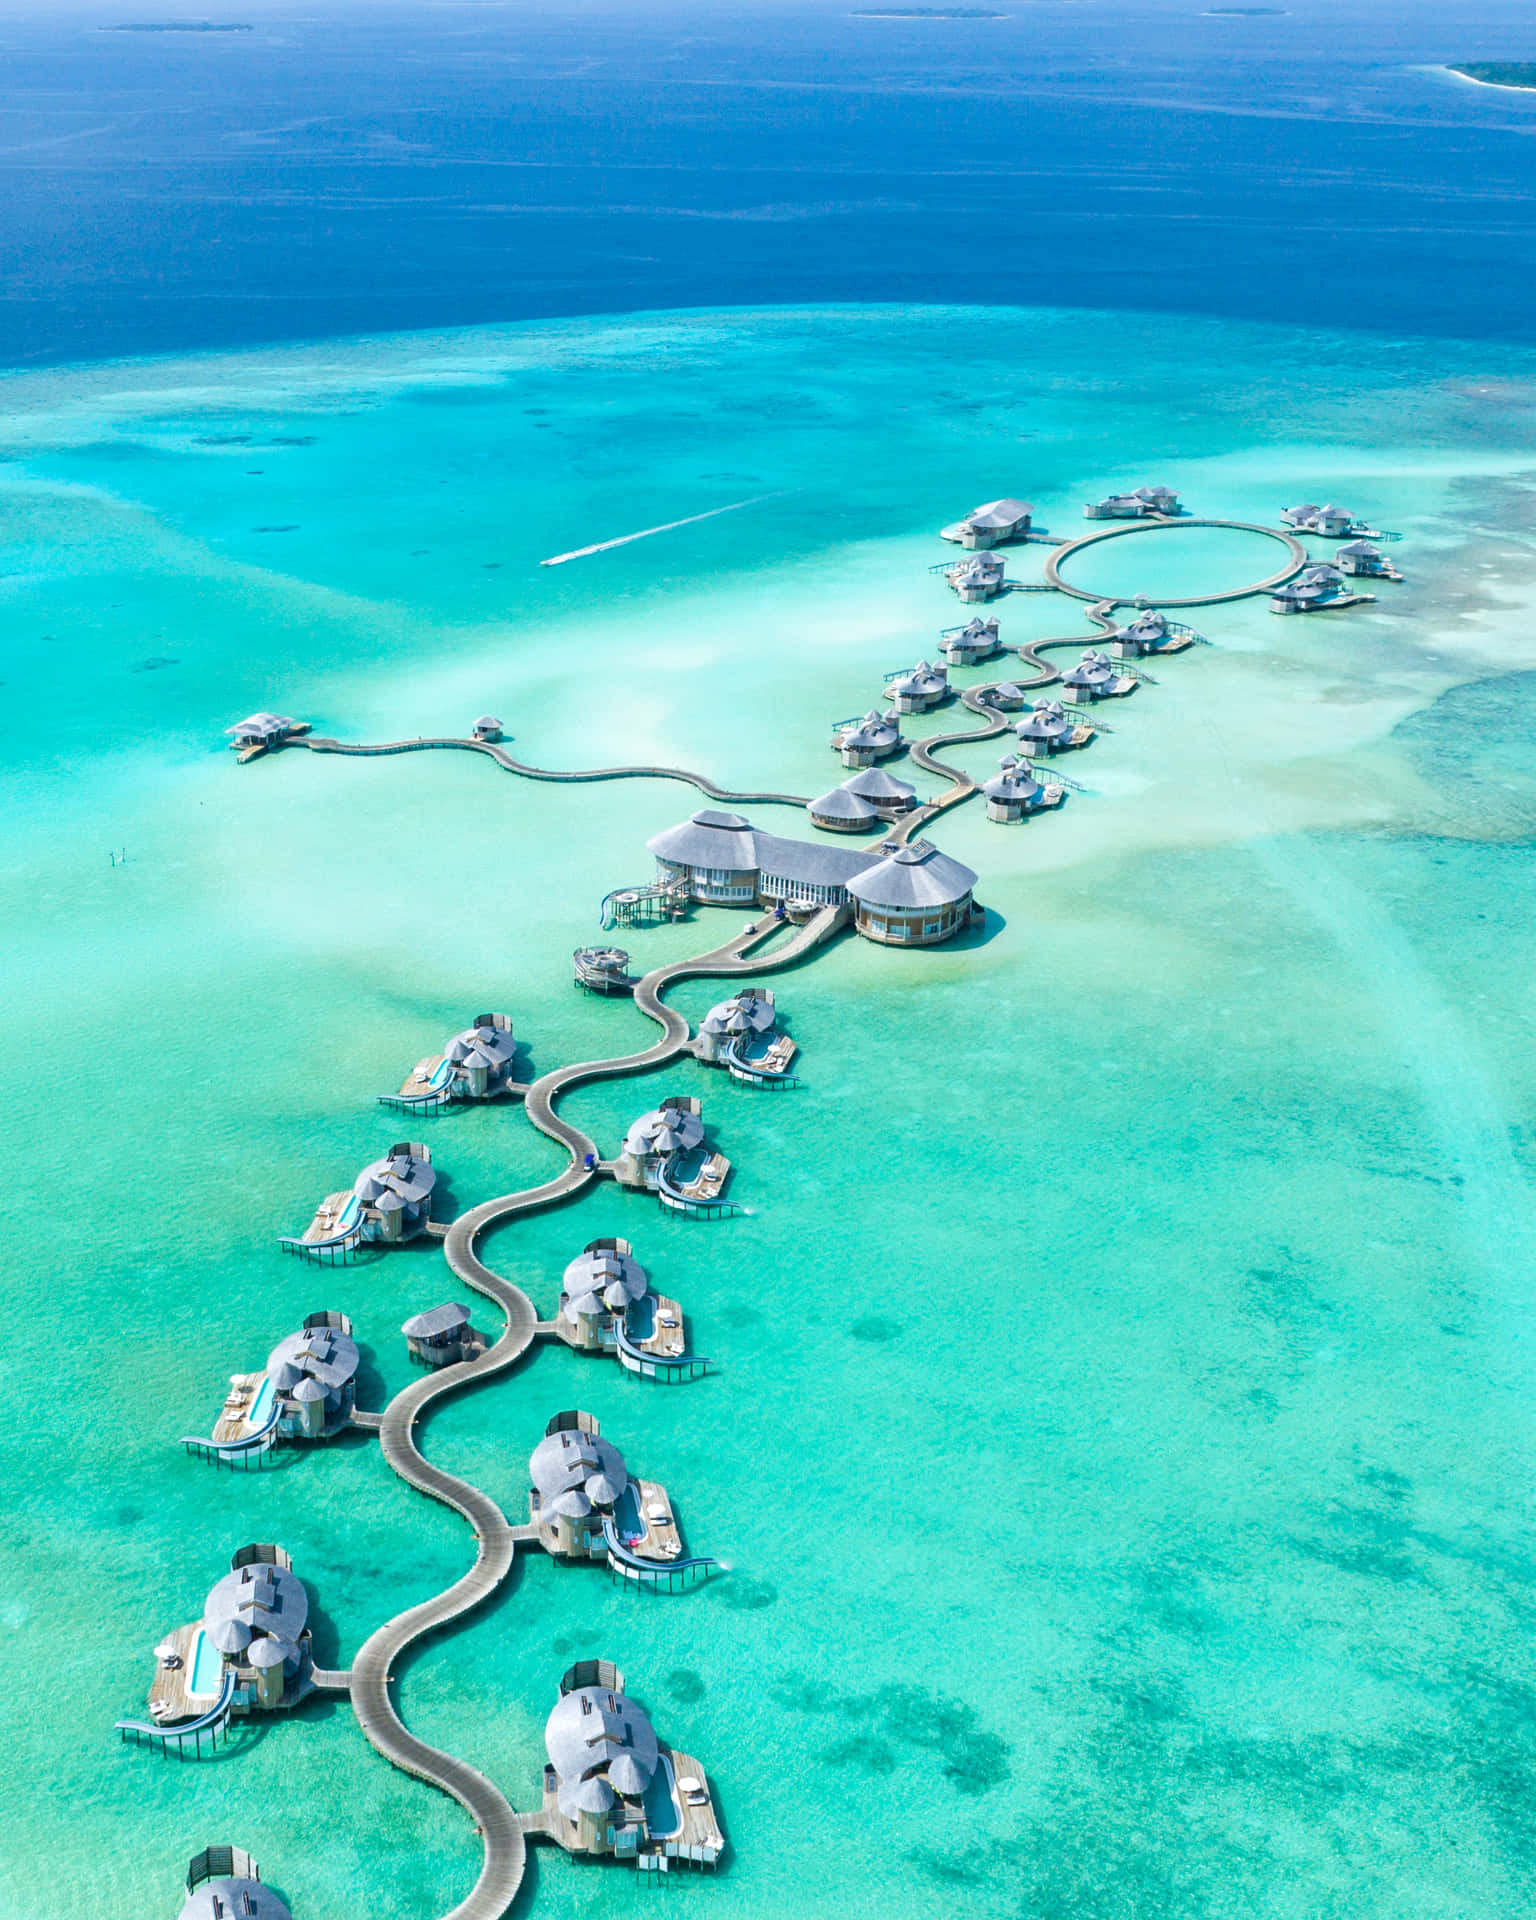 Njutav Den Perfekta Flykten Till Maldiverna